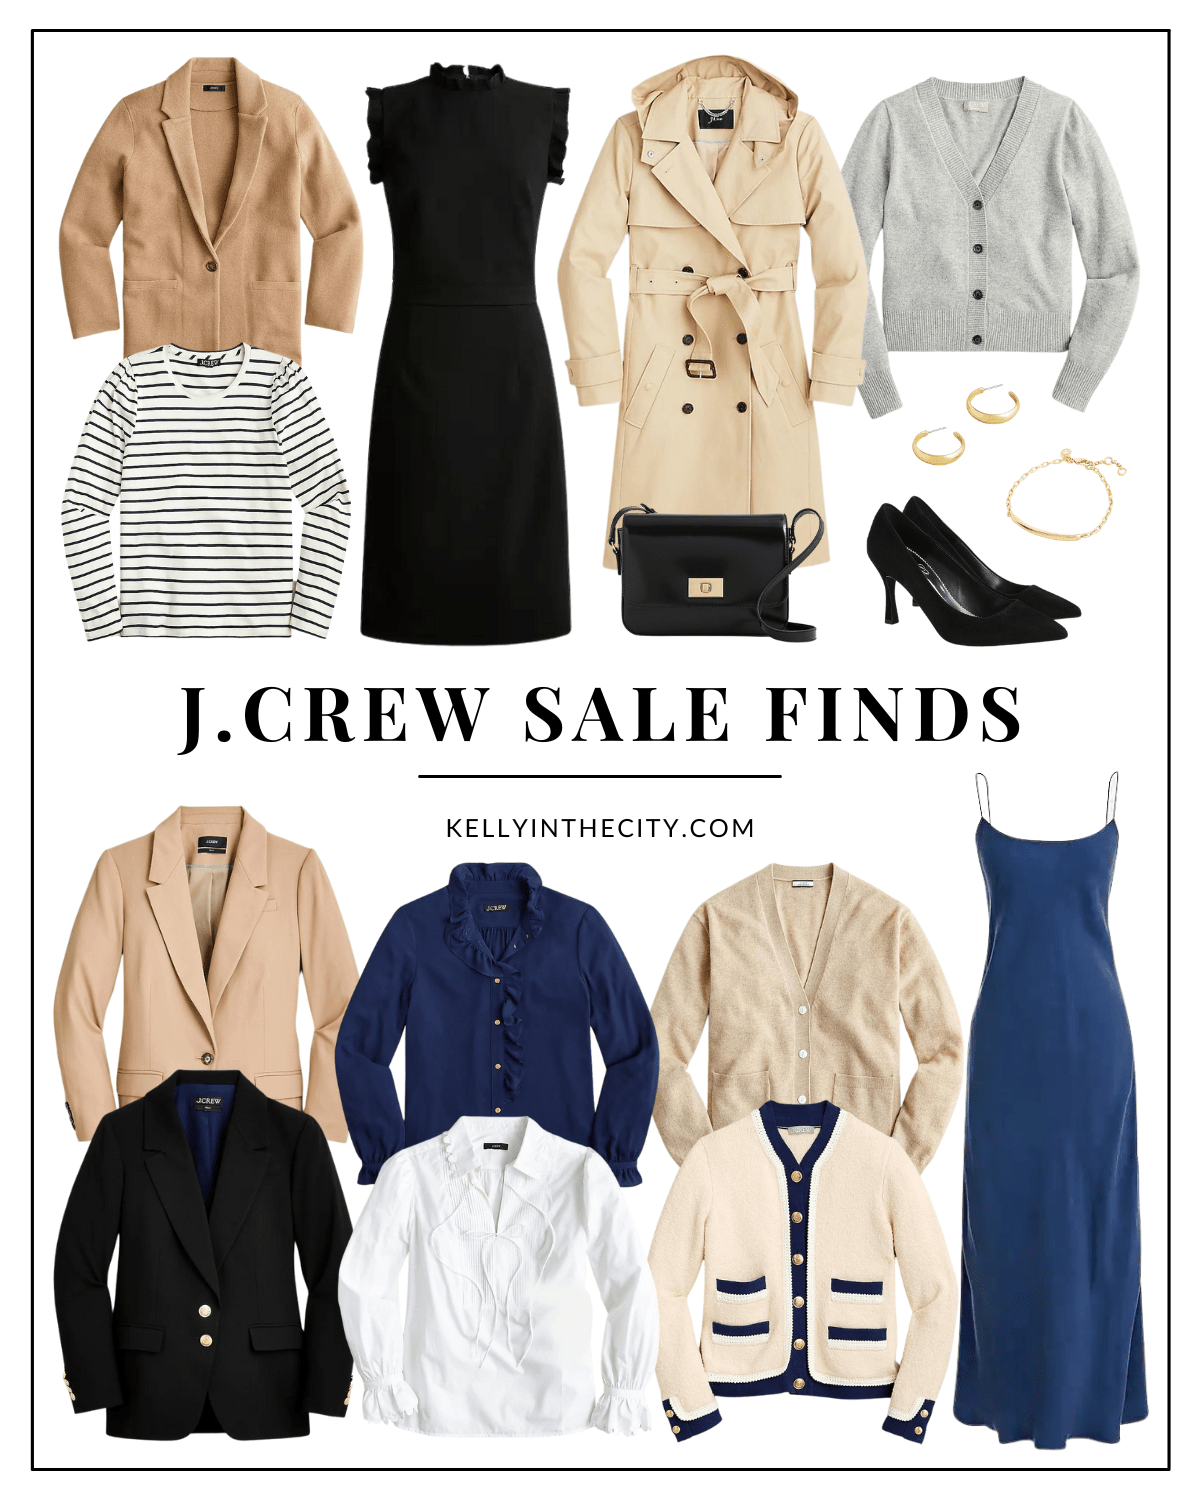 J.Crew Sale Finds